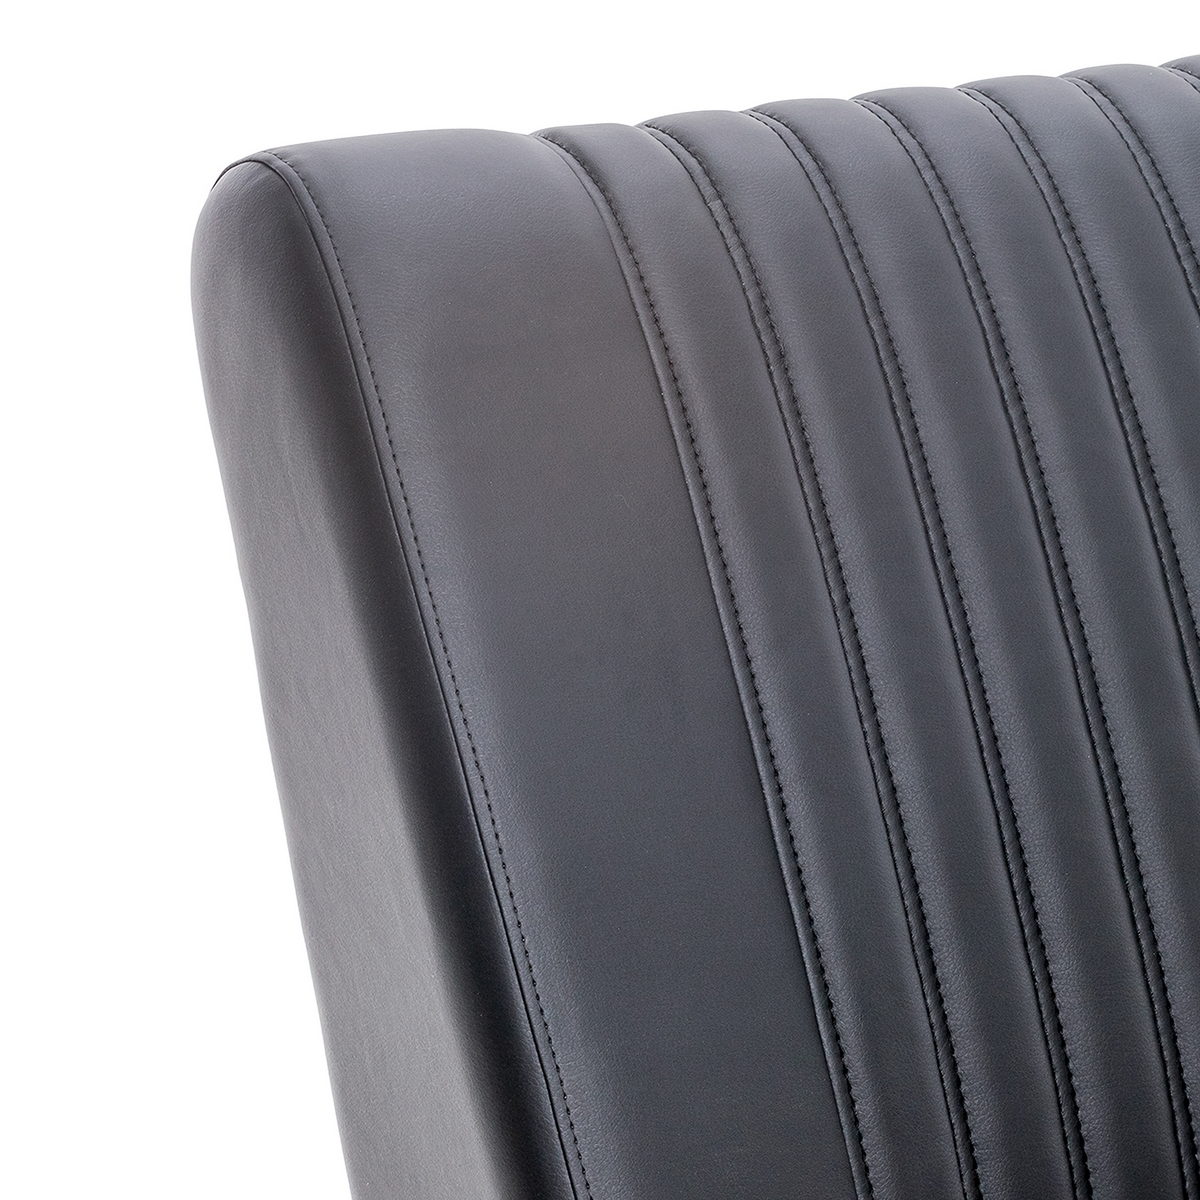 Кресло для отдыха Модель S7 Люкс (Импэкс). Цвет каркаса: Дуб шпон; Цвет обивки: Madryt 9100